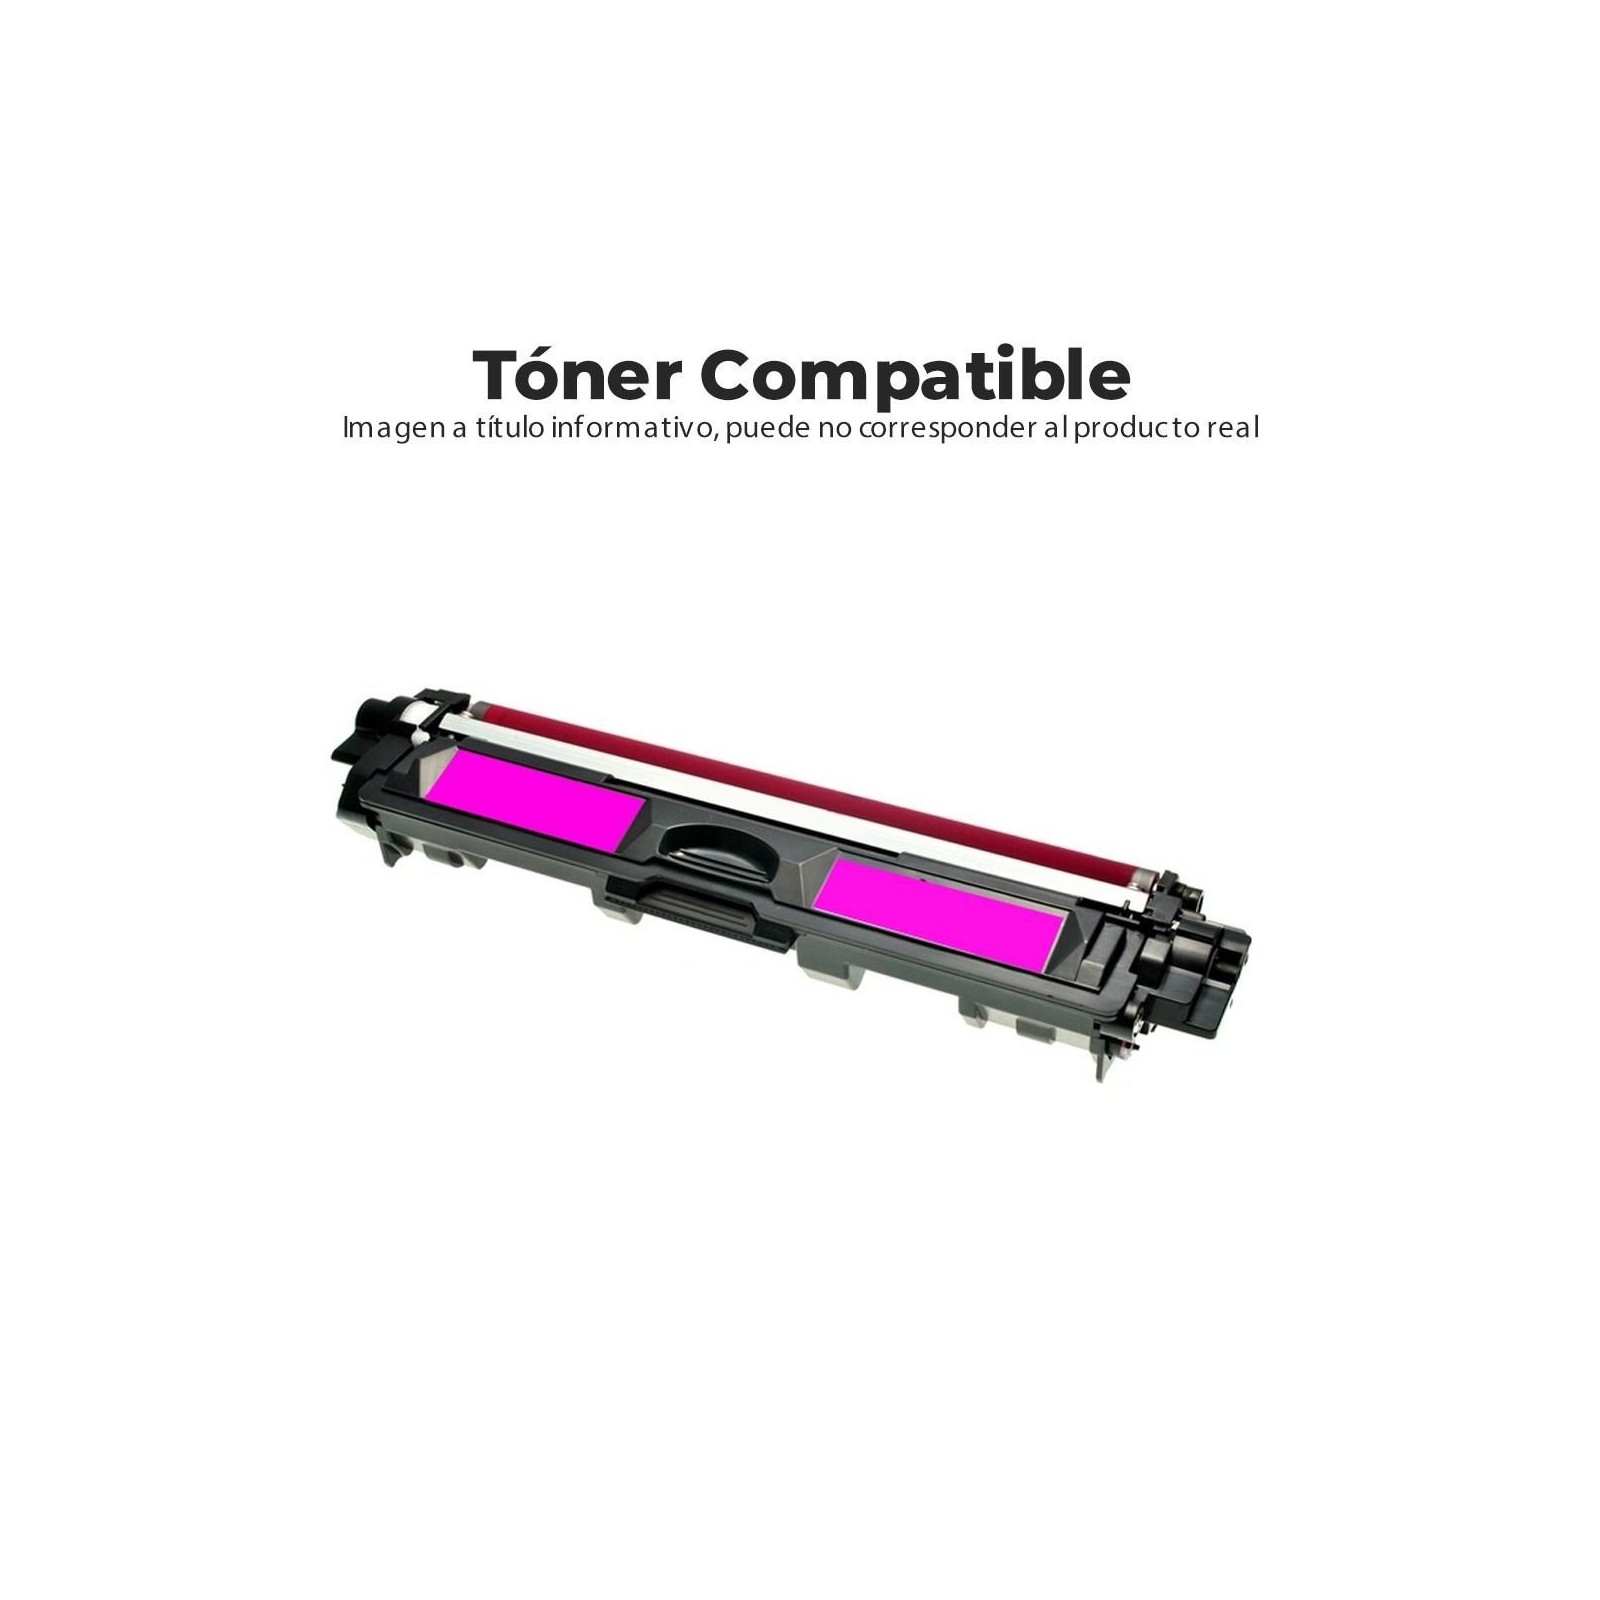 Toner Compatible Hp 205A Magenta 900 Pg